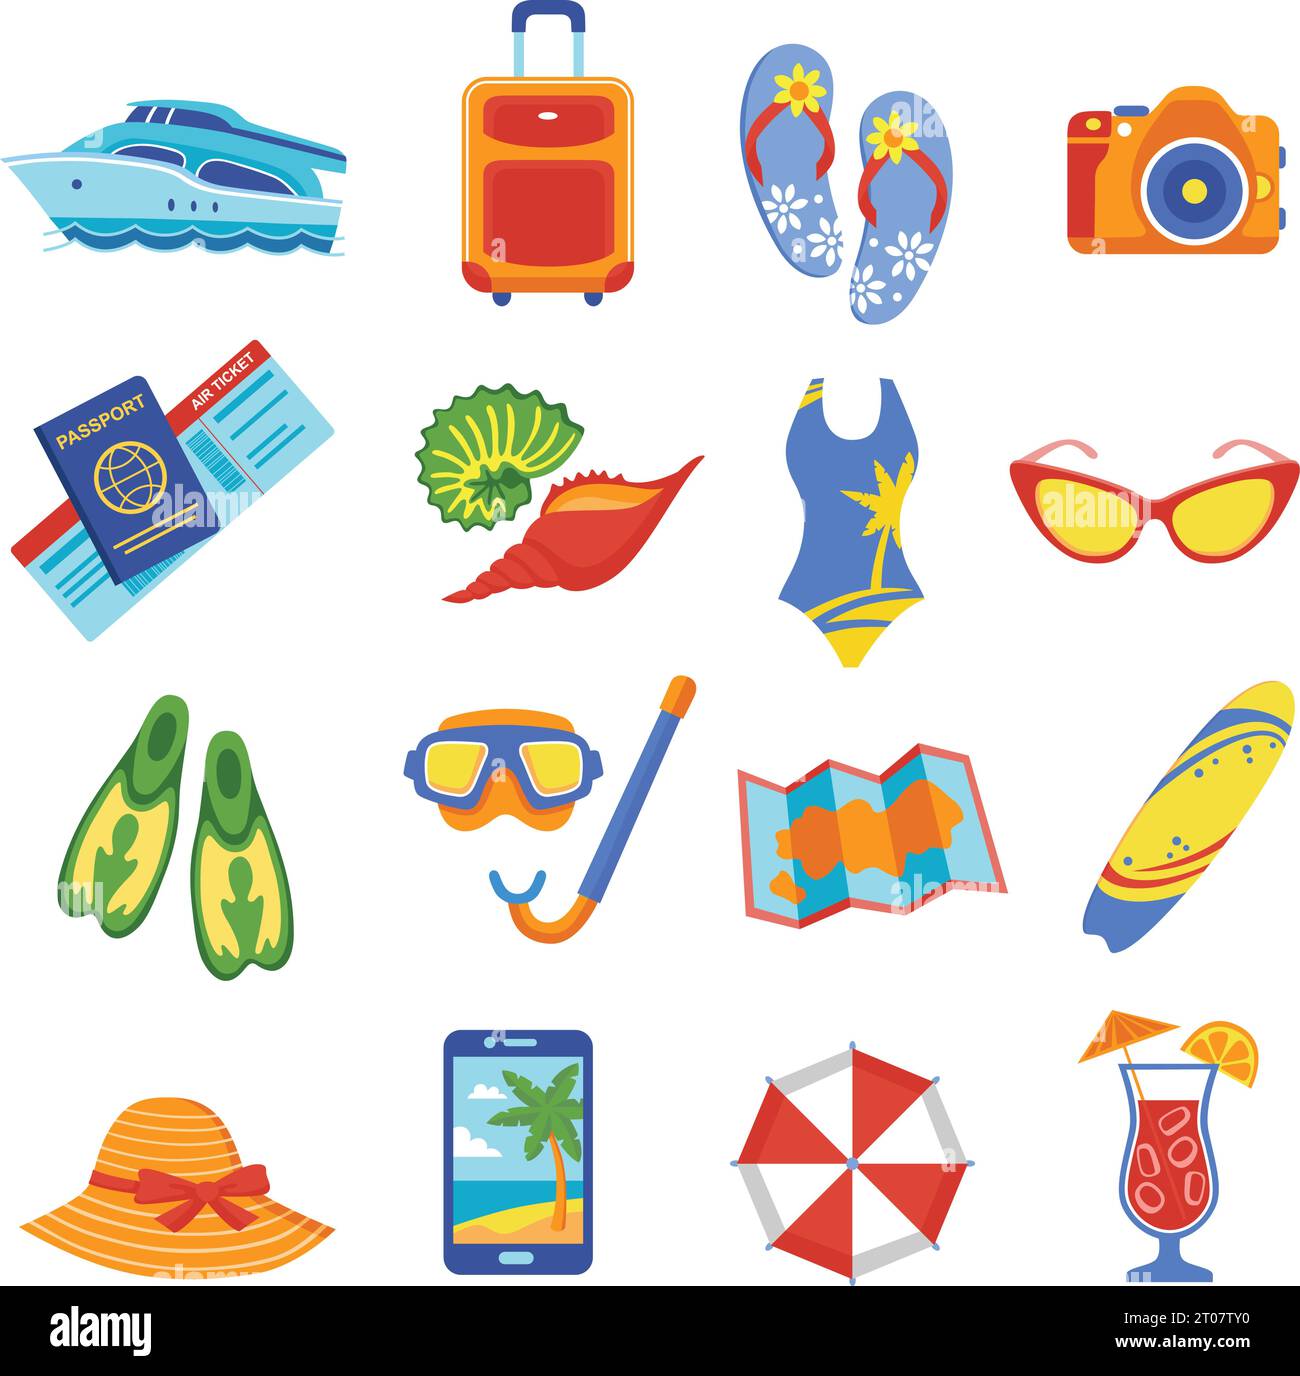 Sommerurlaub tropischen Strandurlaub flache Ikonen mit Tauchen Schnorchel Maske Flossen Ausrüstung abstrakte Vektor Illustration gesetzt Stock Vektor